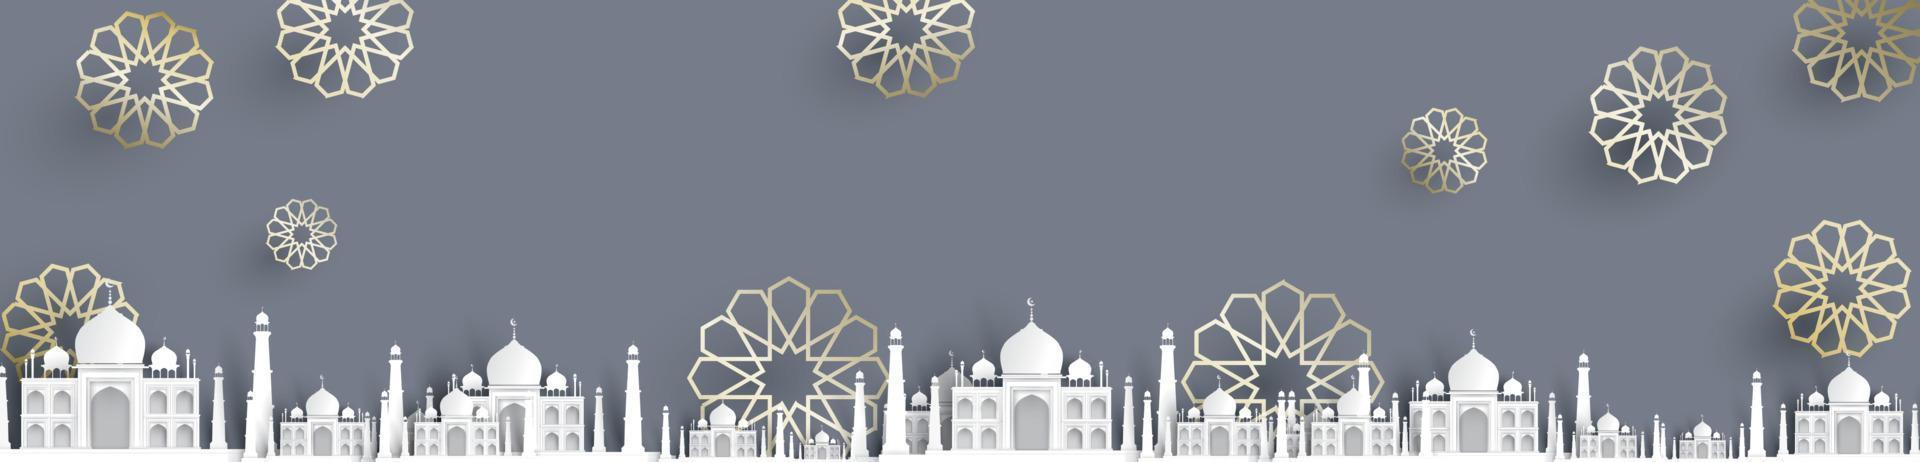 fondo de texto de mezquita en blanco, diseño islámico moderno y elegante vector